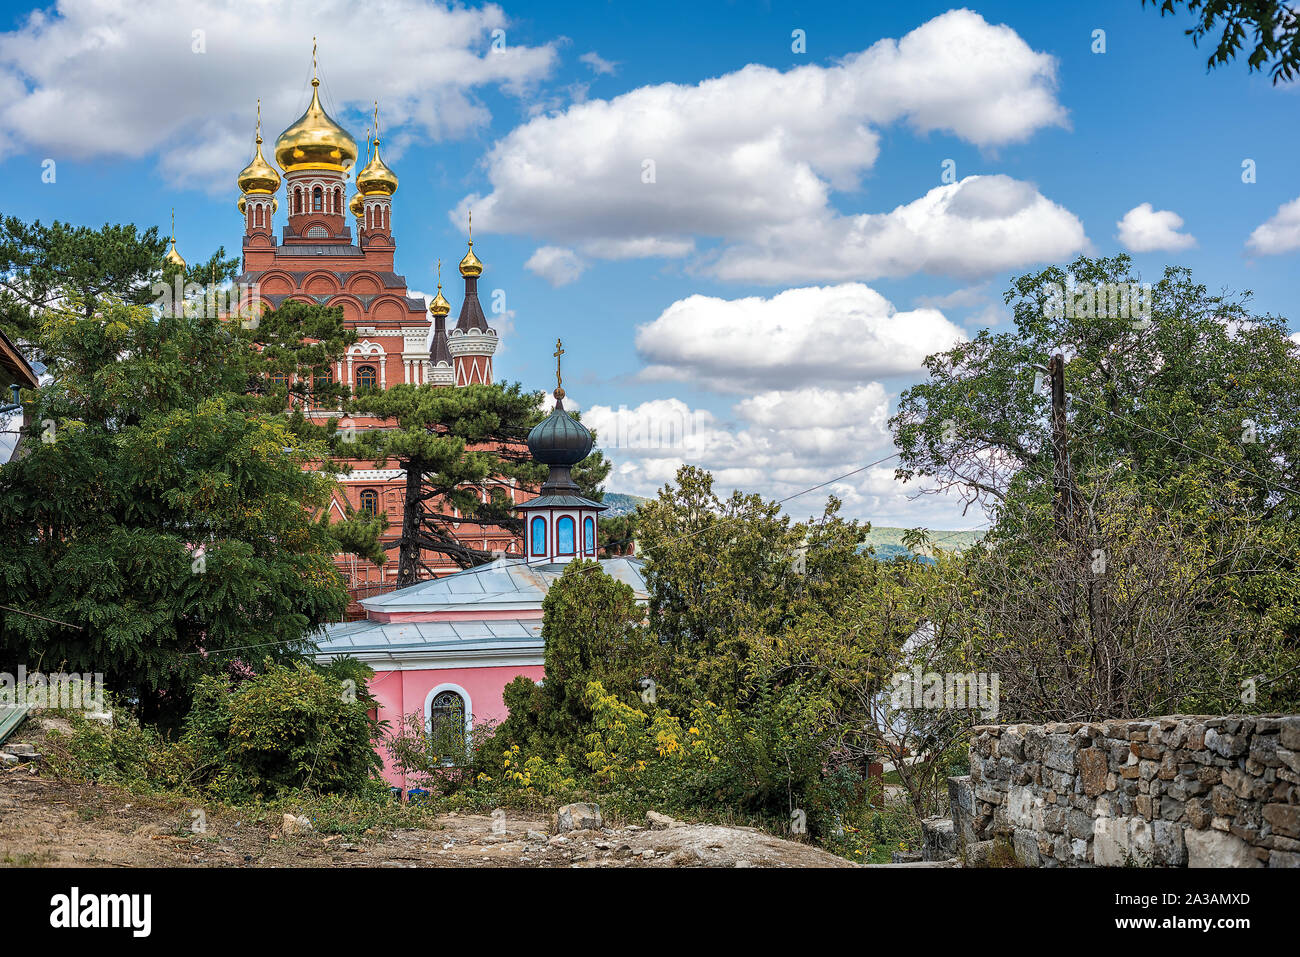 La Russie, en Crimée, péninsule. Toplovsky Paraskevievsky - Monastère Sainte Trinité le célèbre monastère orthodoxe. Cathédrale en l'honneur de l'Life-Givi Banque D'Images